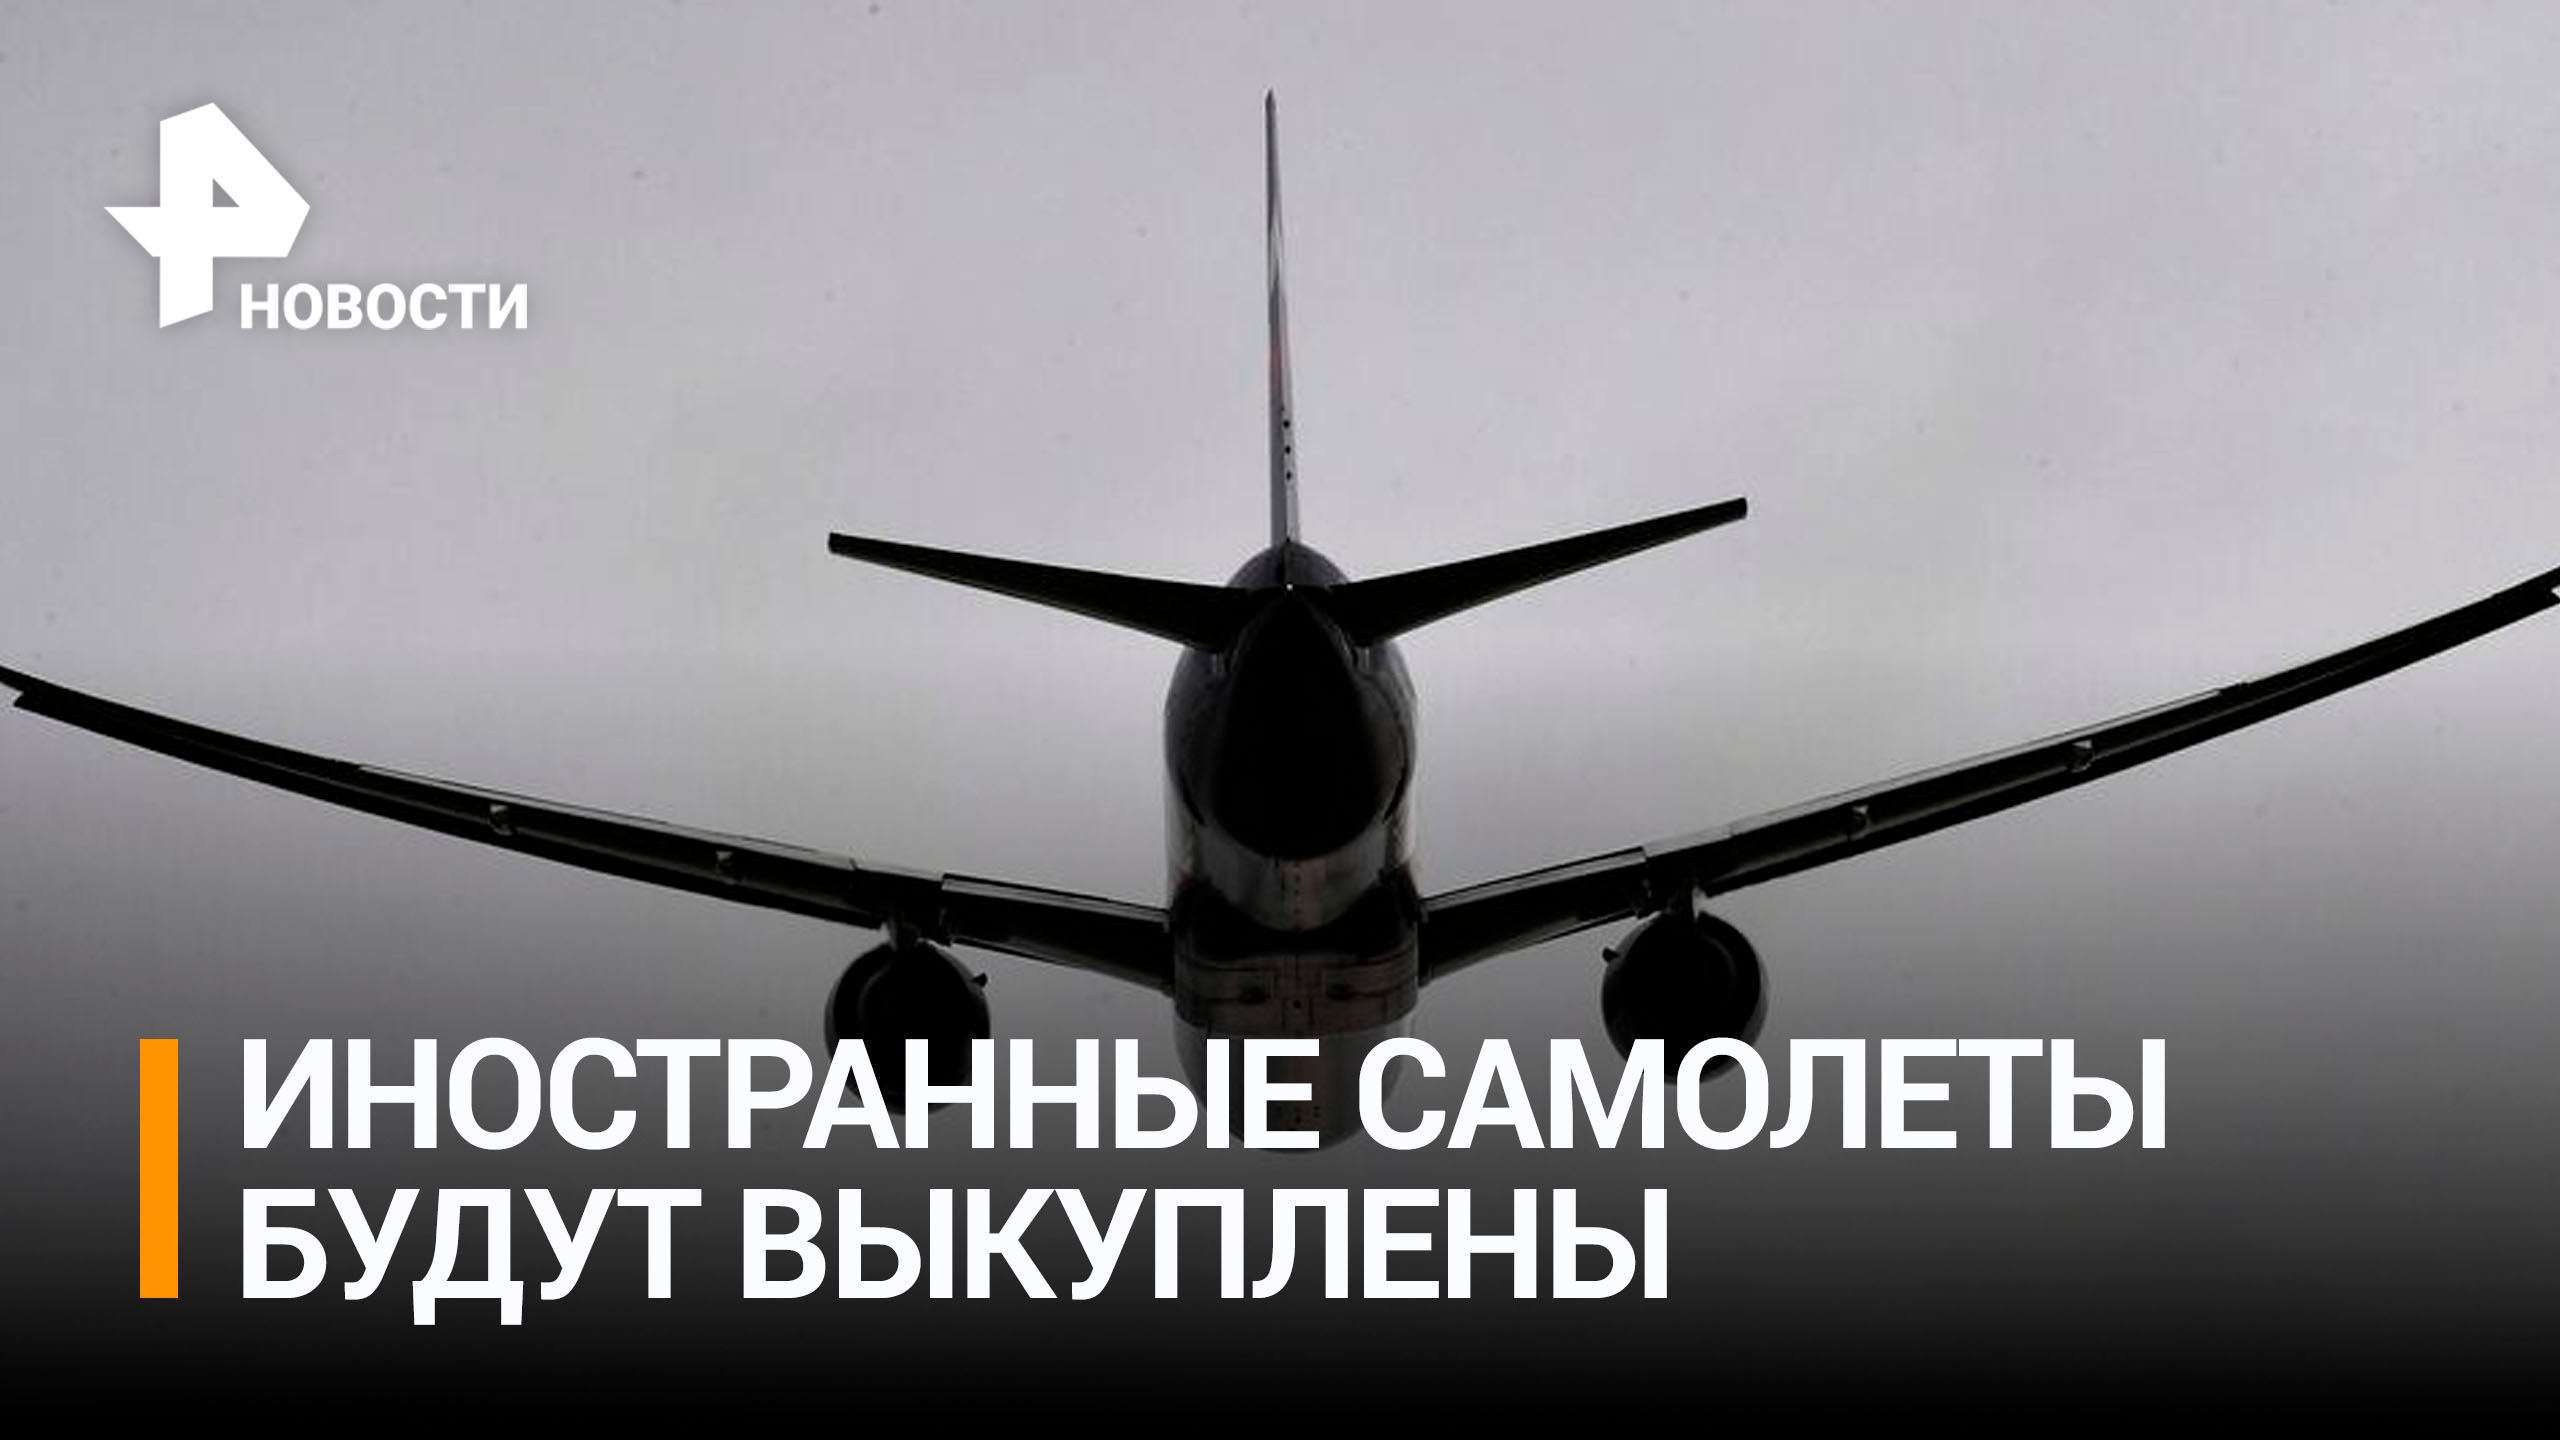 Правительство выделило средства на выкуп иностранных самолетов / РЕН Новости